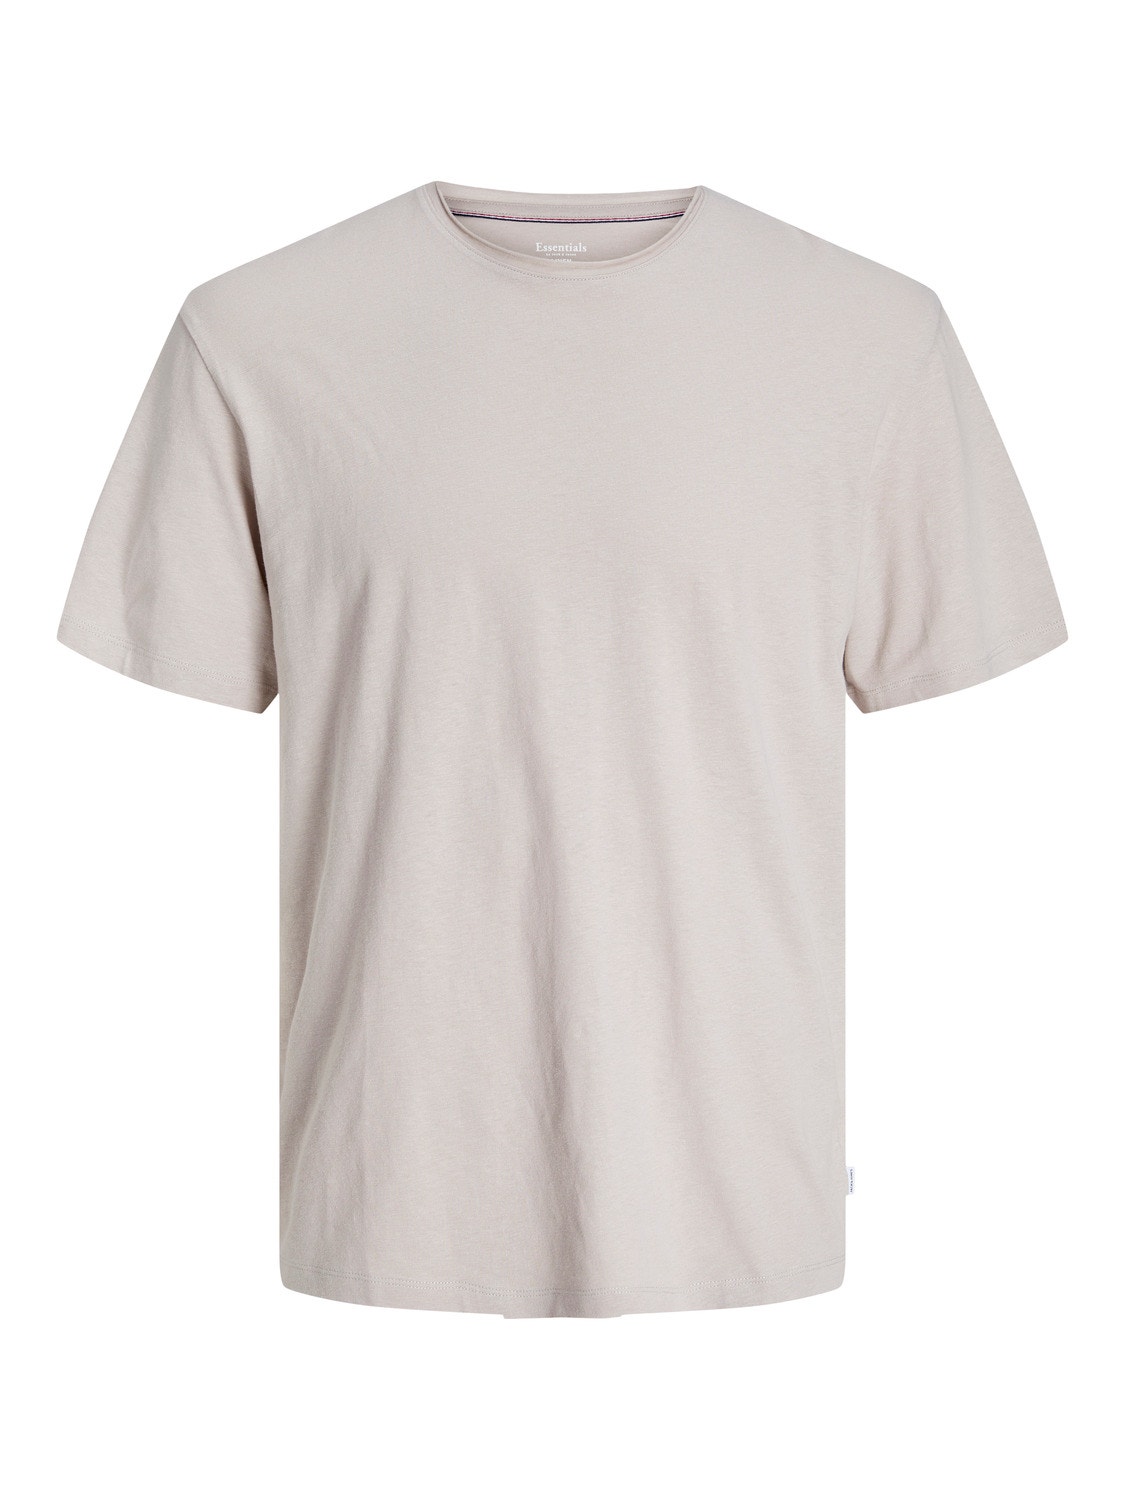 Jack & Jones Plain Crew neck T-shirt -Crockery - 12246718